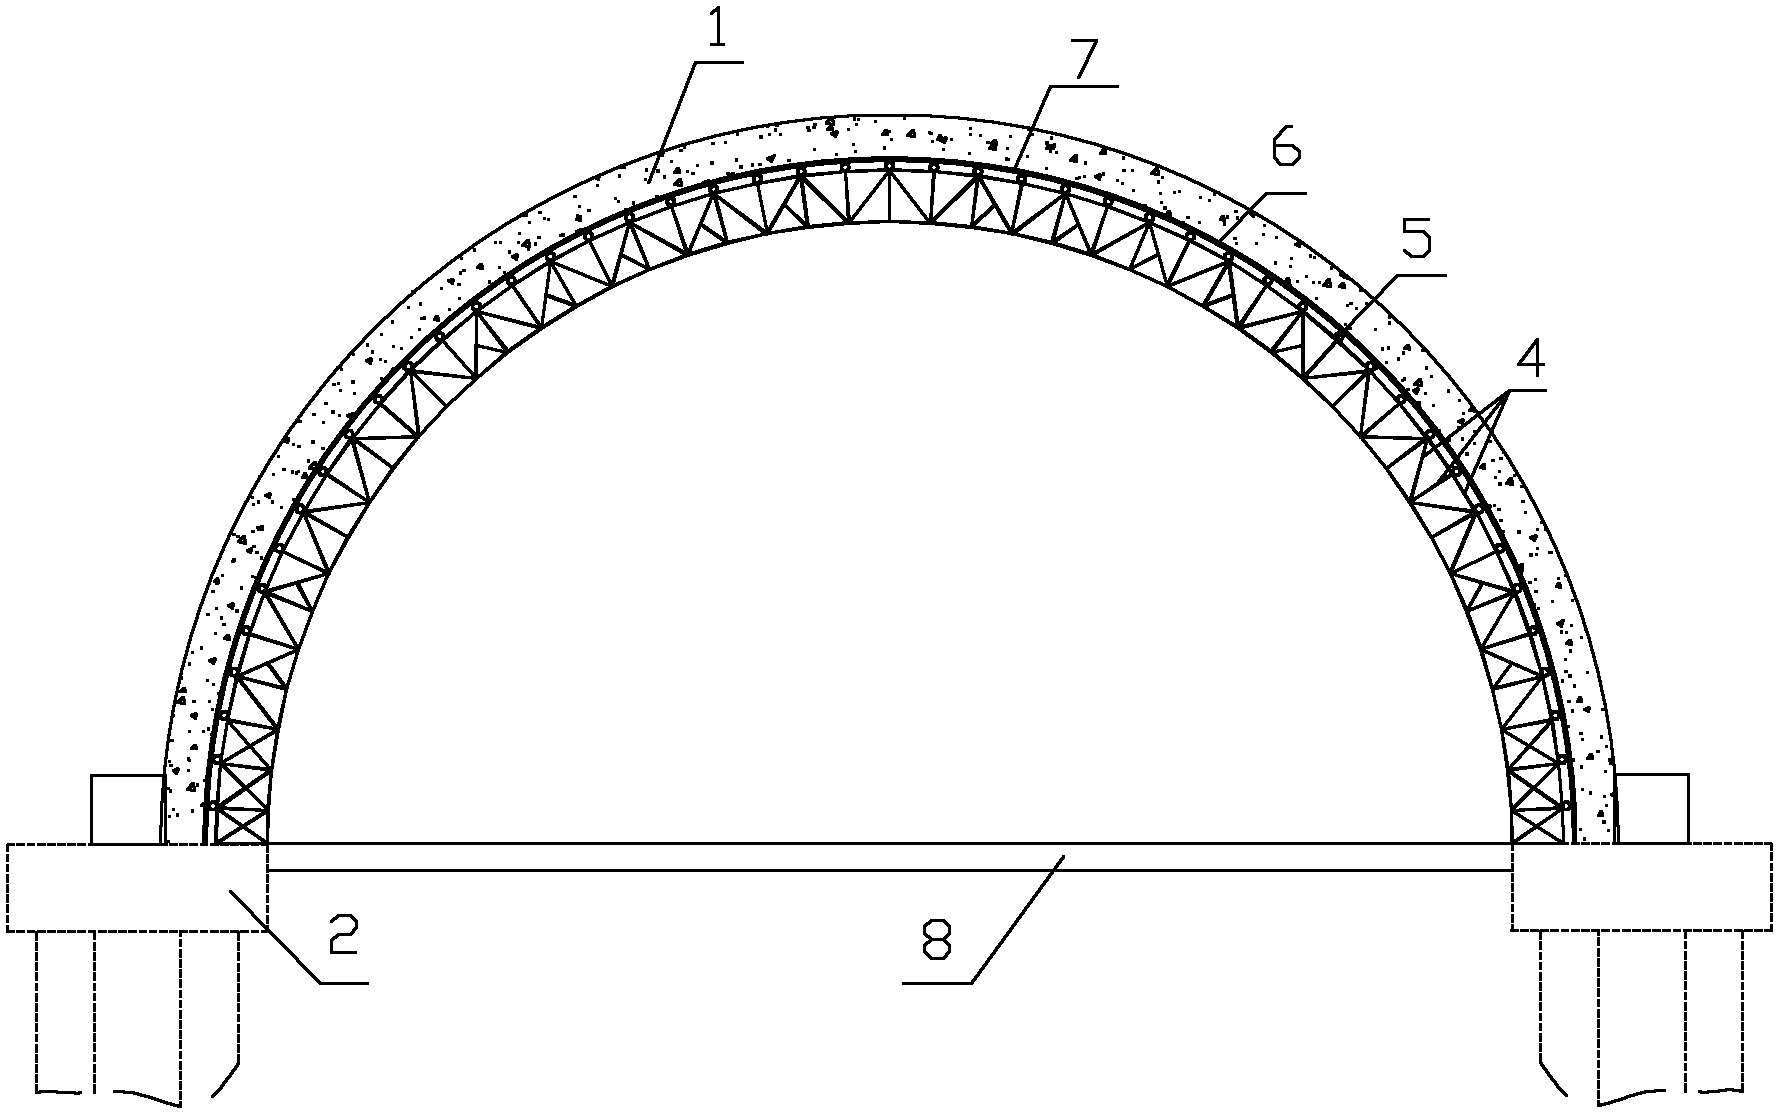 Reinforced concrete arch bridge construction method